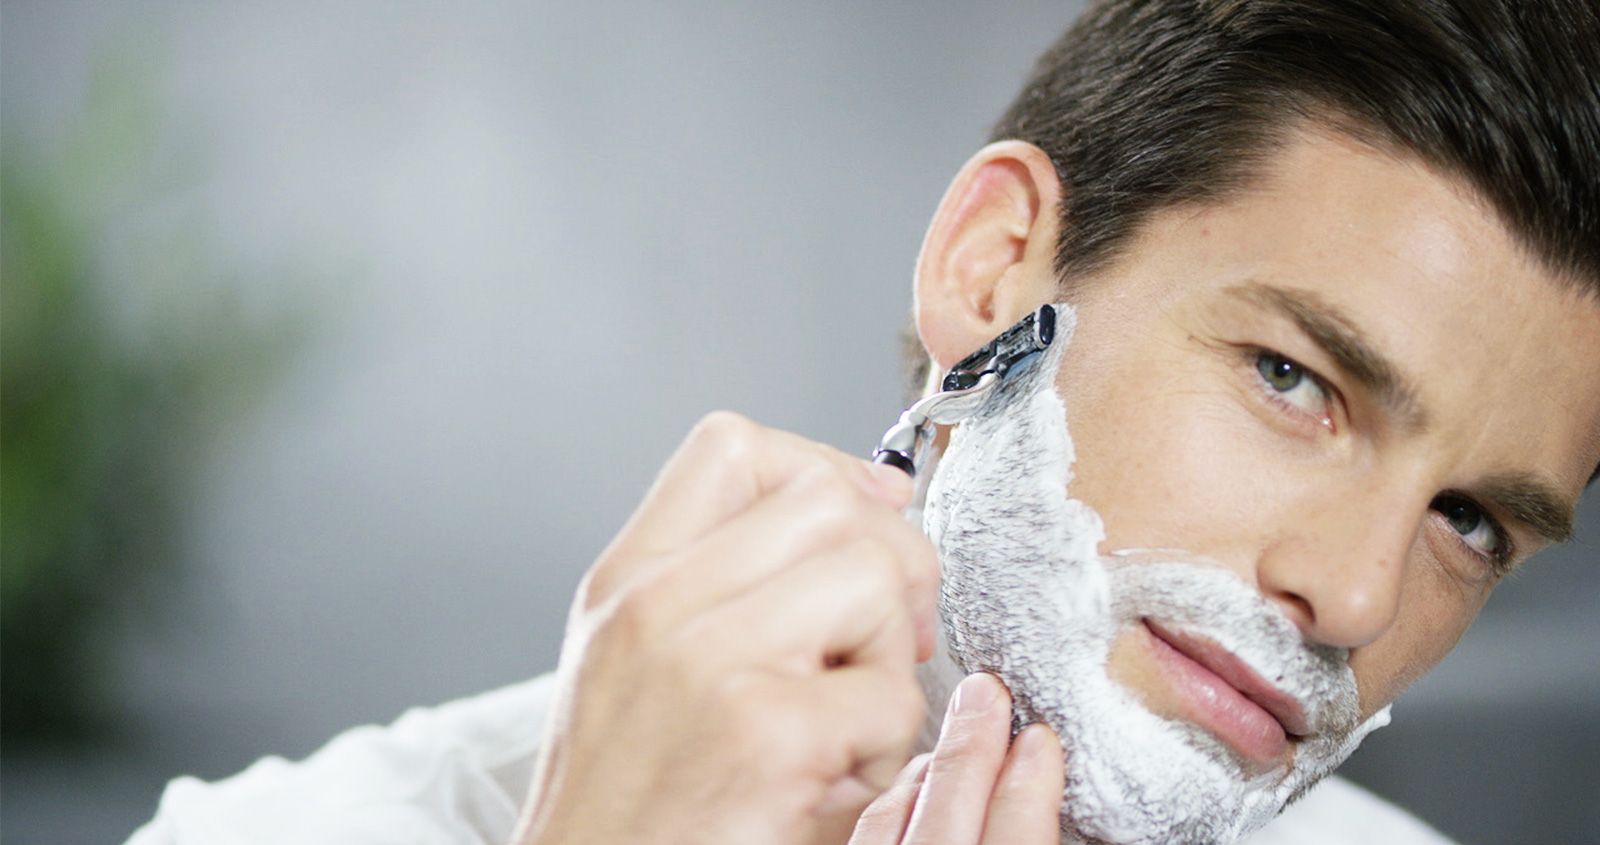 Best shaving razors for men and women in 2019